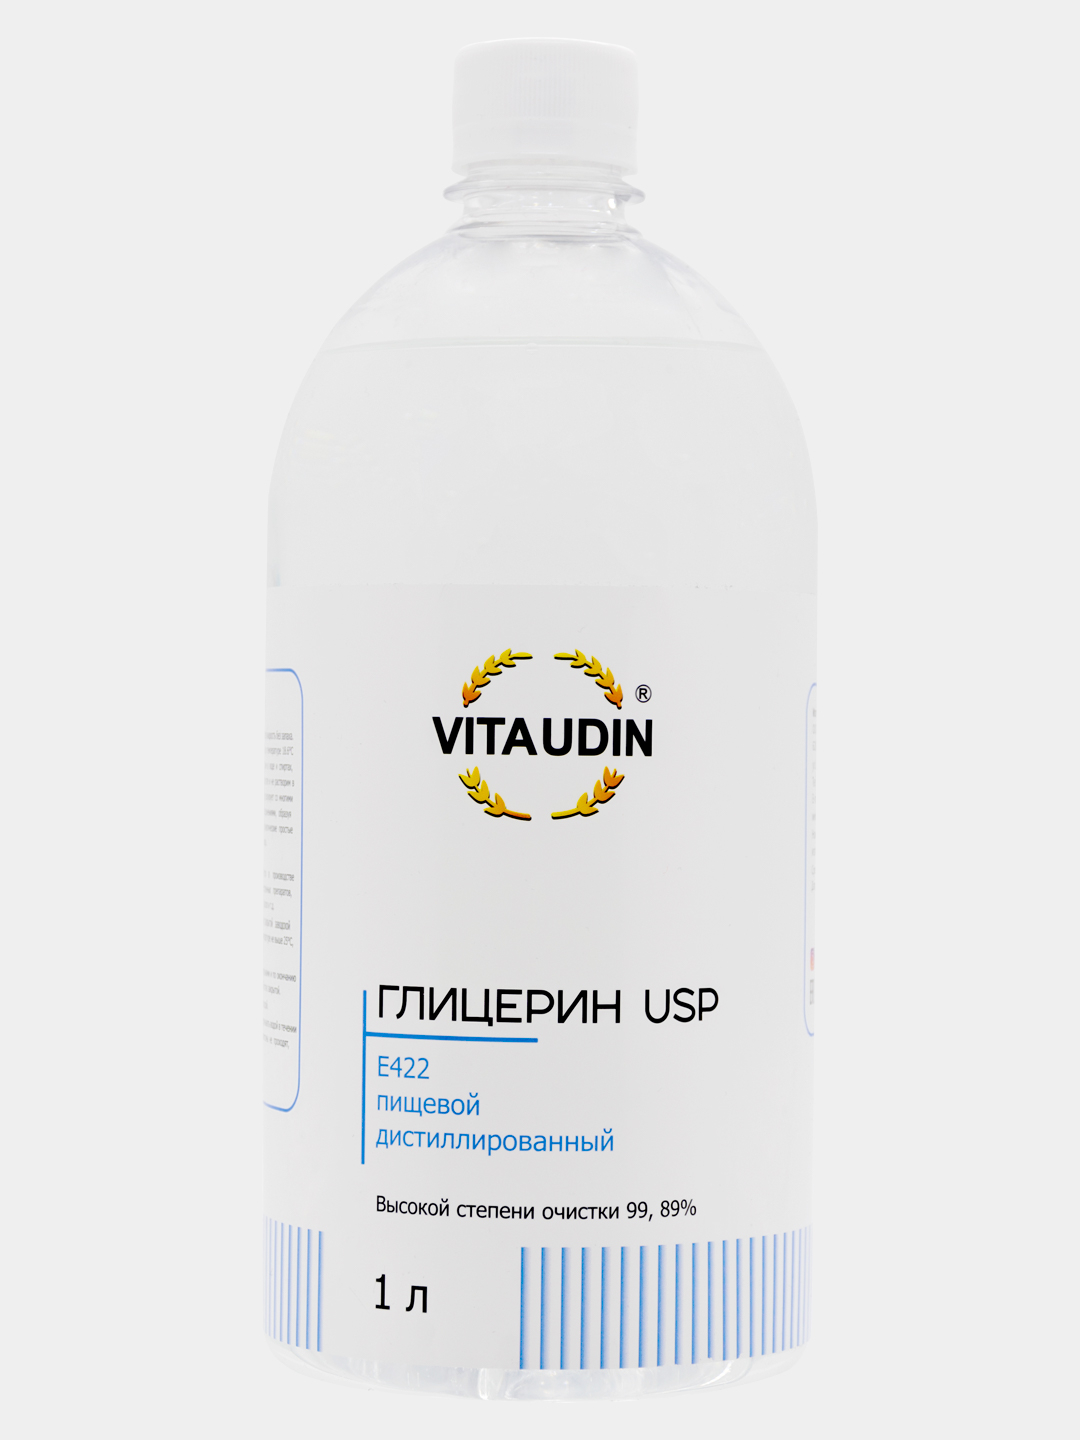  USP пищевой чистый дистилированный VITA UDIN 1 л 99,89 % E422 .